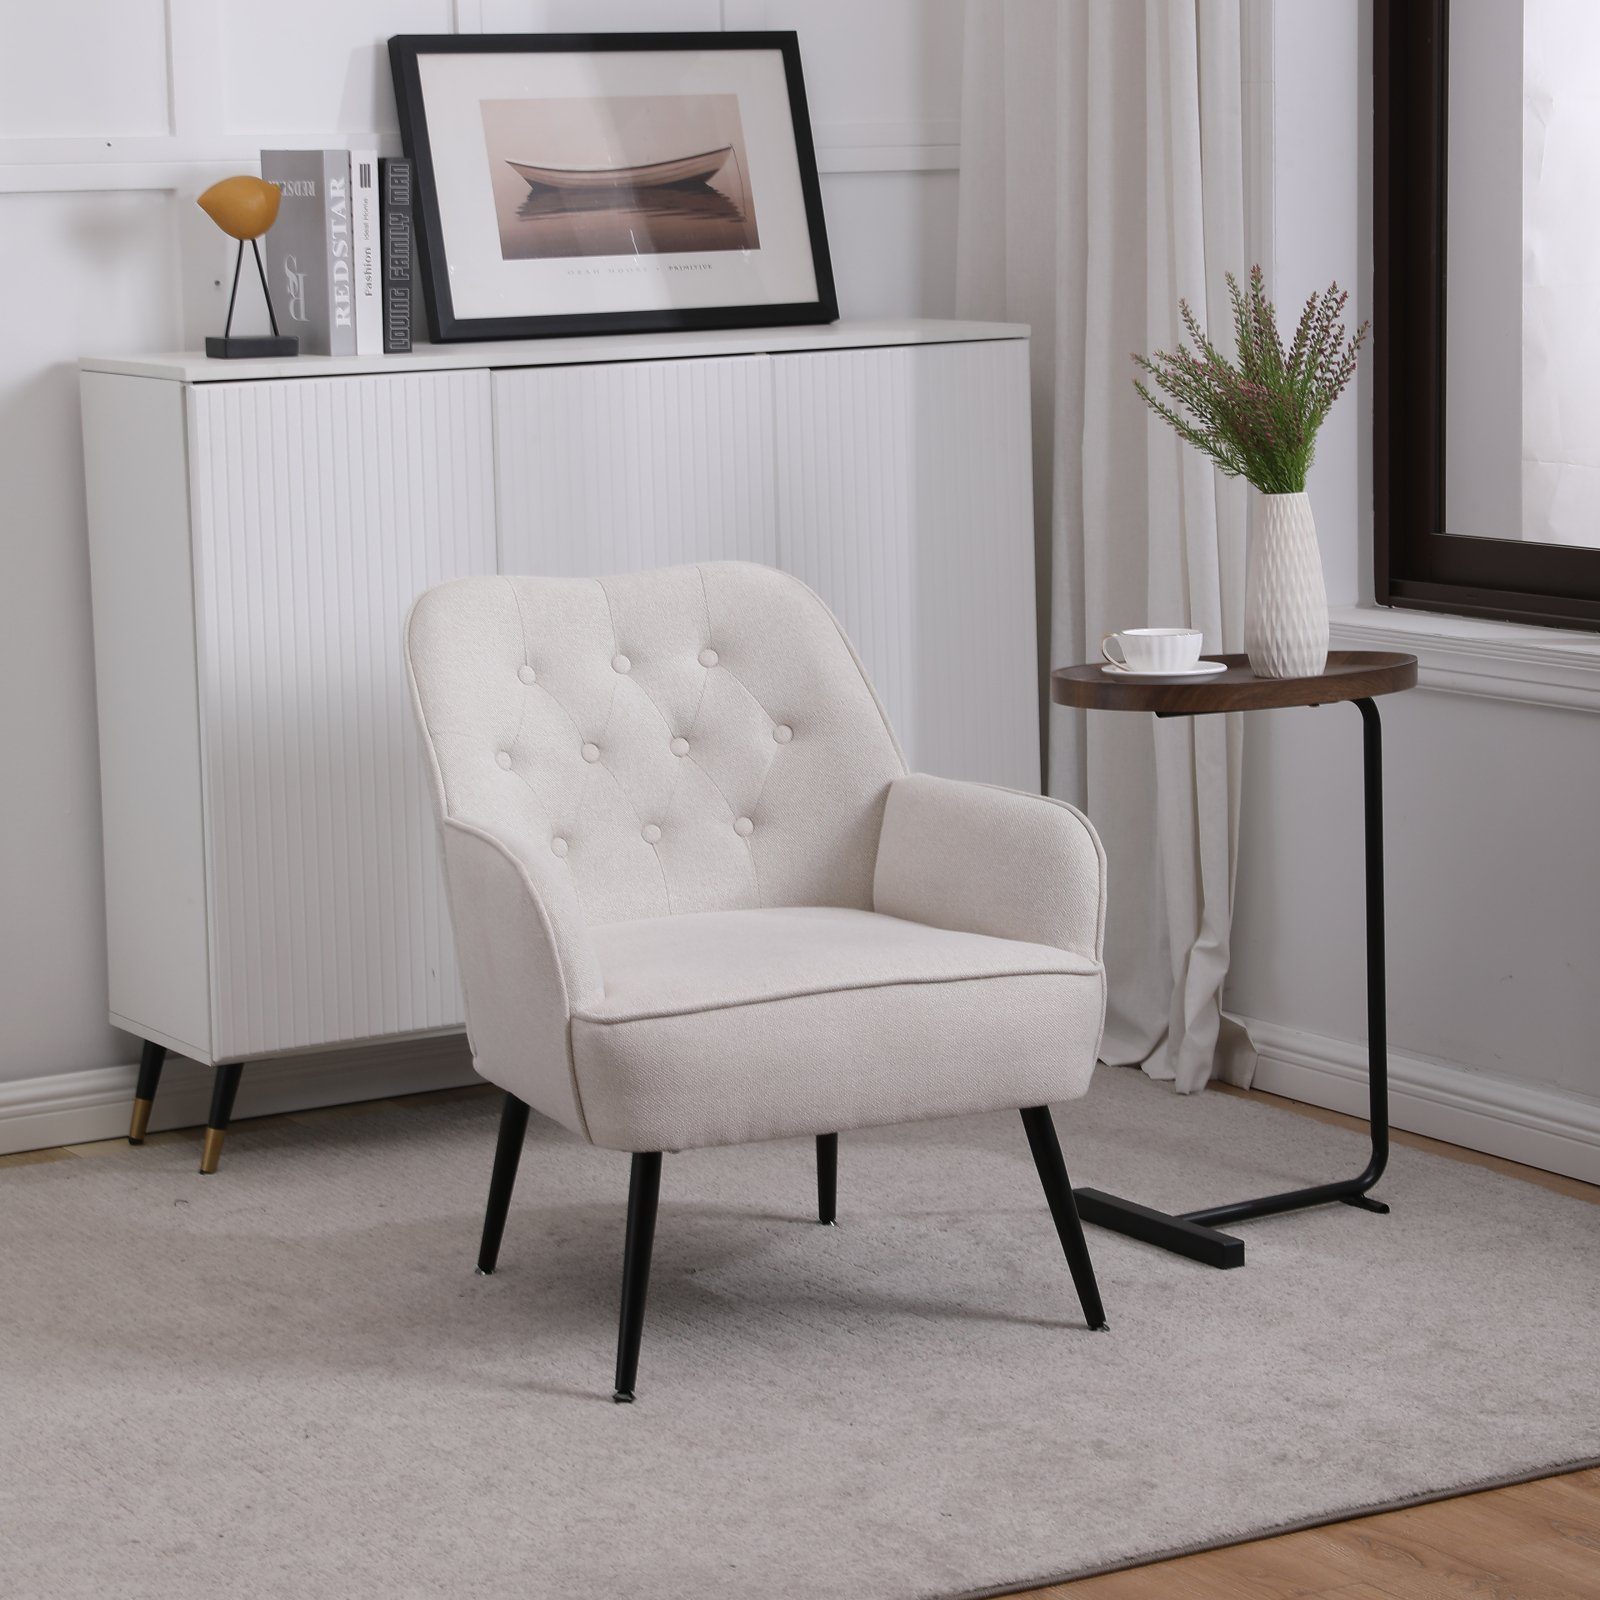 SEEZSSA Polsterstuhl Modern Wohnzimmer Sessel Lounge Sessel Polsterstuhl Relaxsessel, für Wohnzimmer und Schlafzimmer Sofa Stuhl mit Armlehnen Kaffeestuhl Weiß